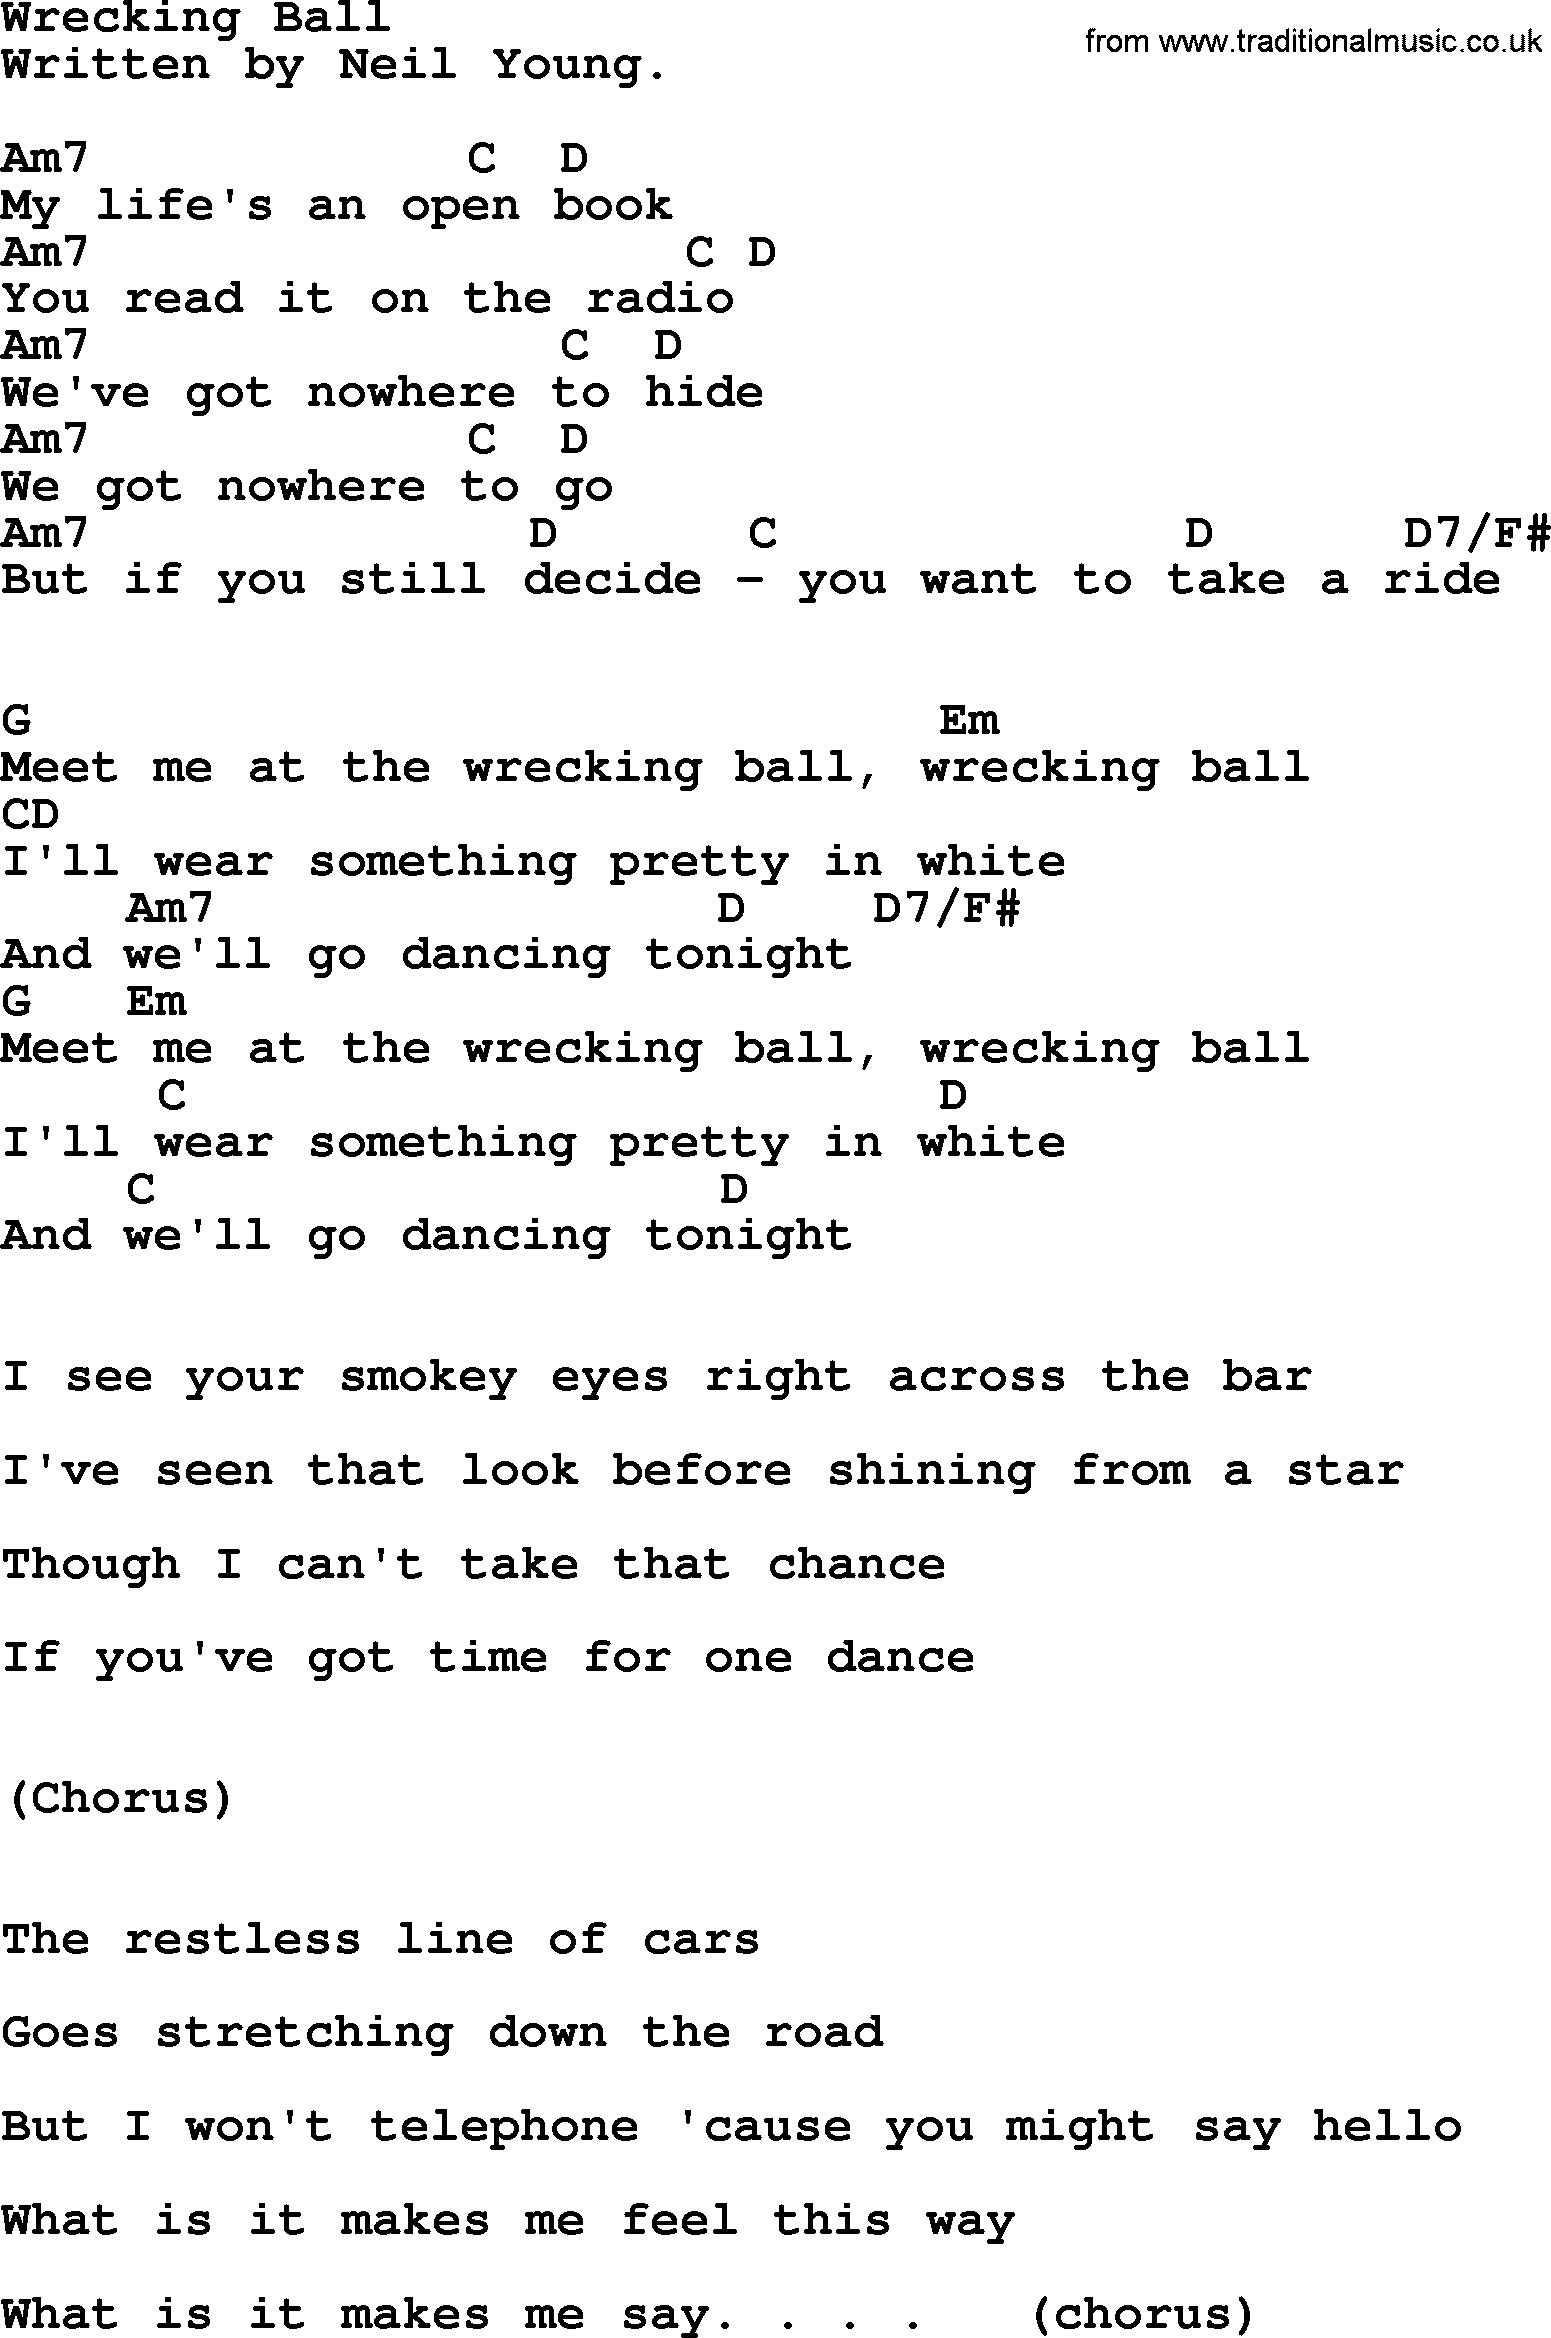 Wrecking Ball Chords Emmylou Harris Song Wrecking Ball Lyrics And Chords